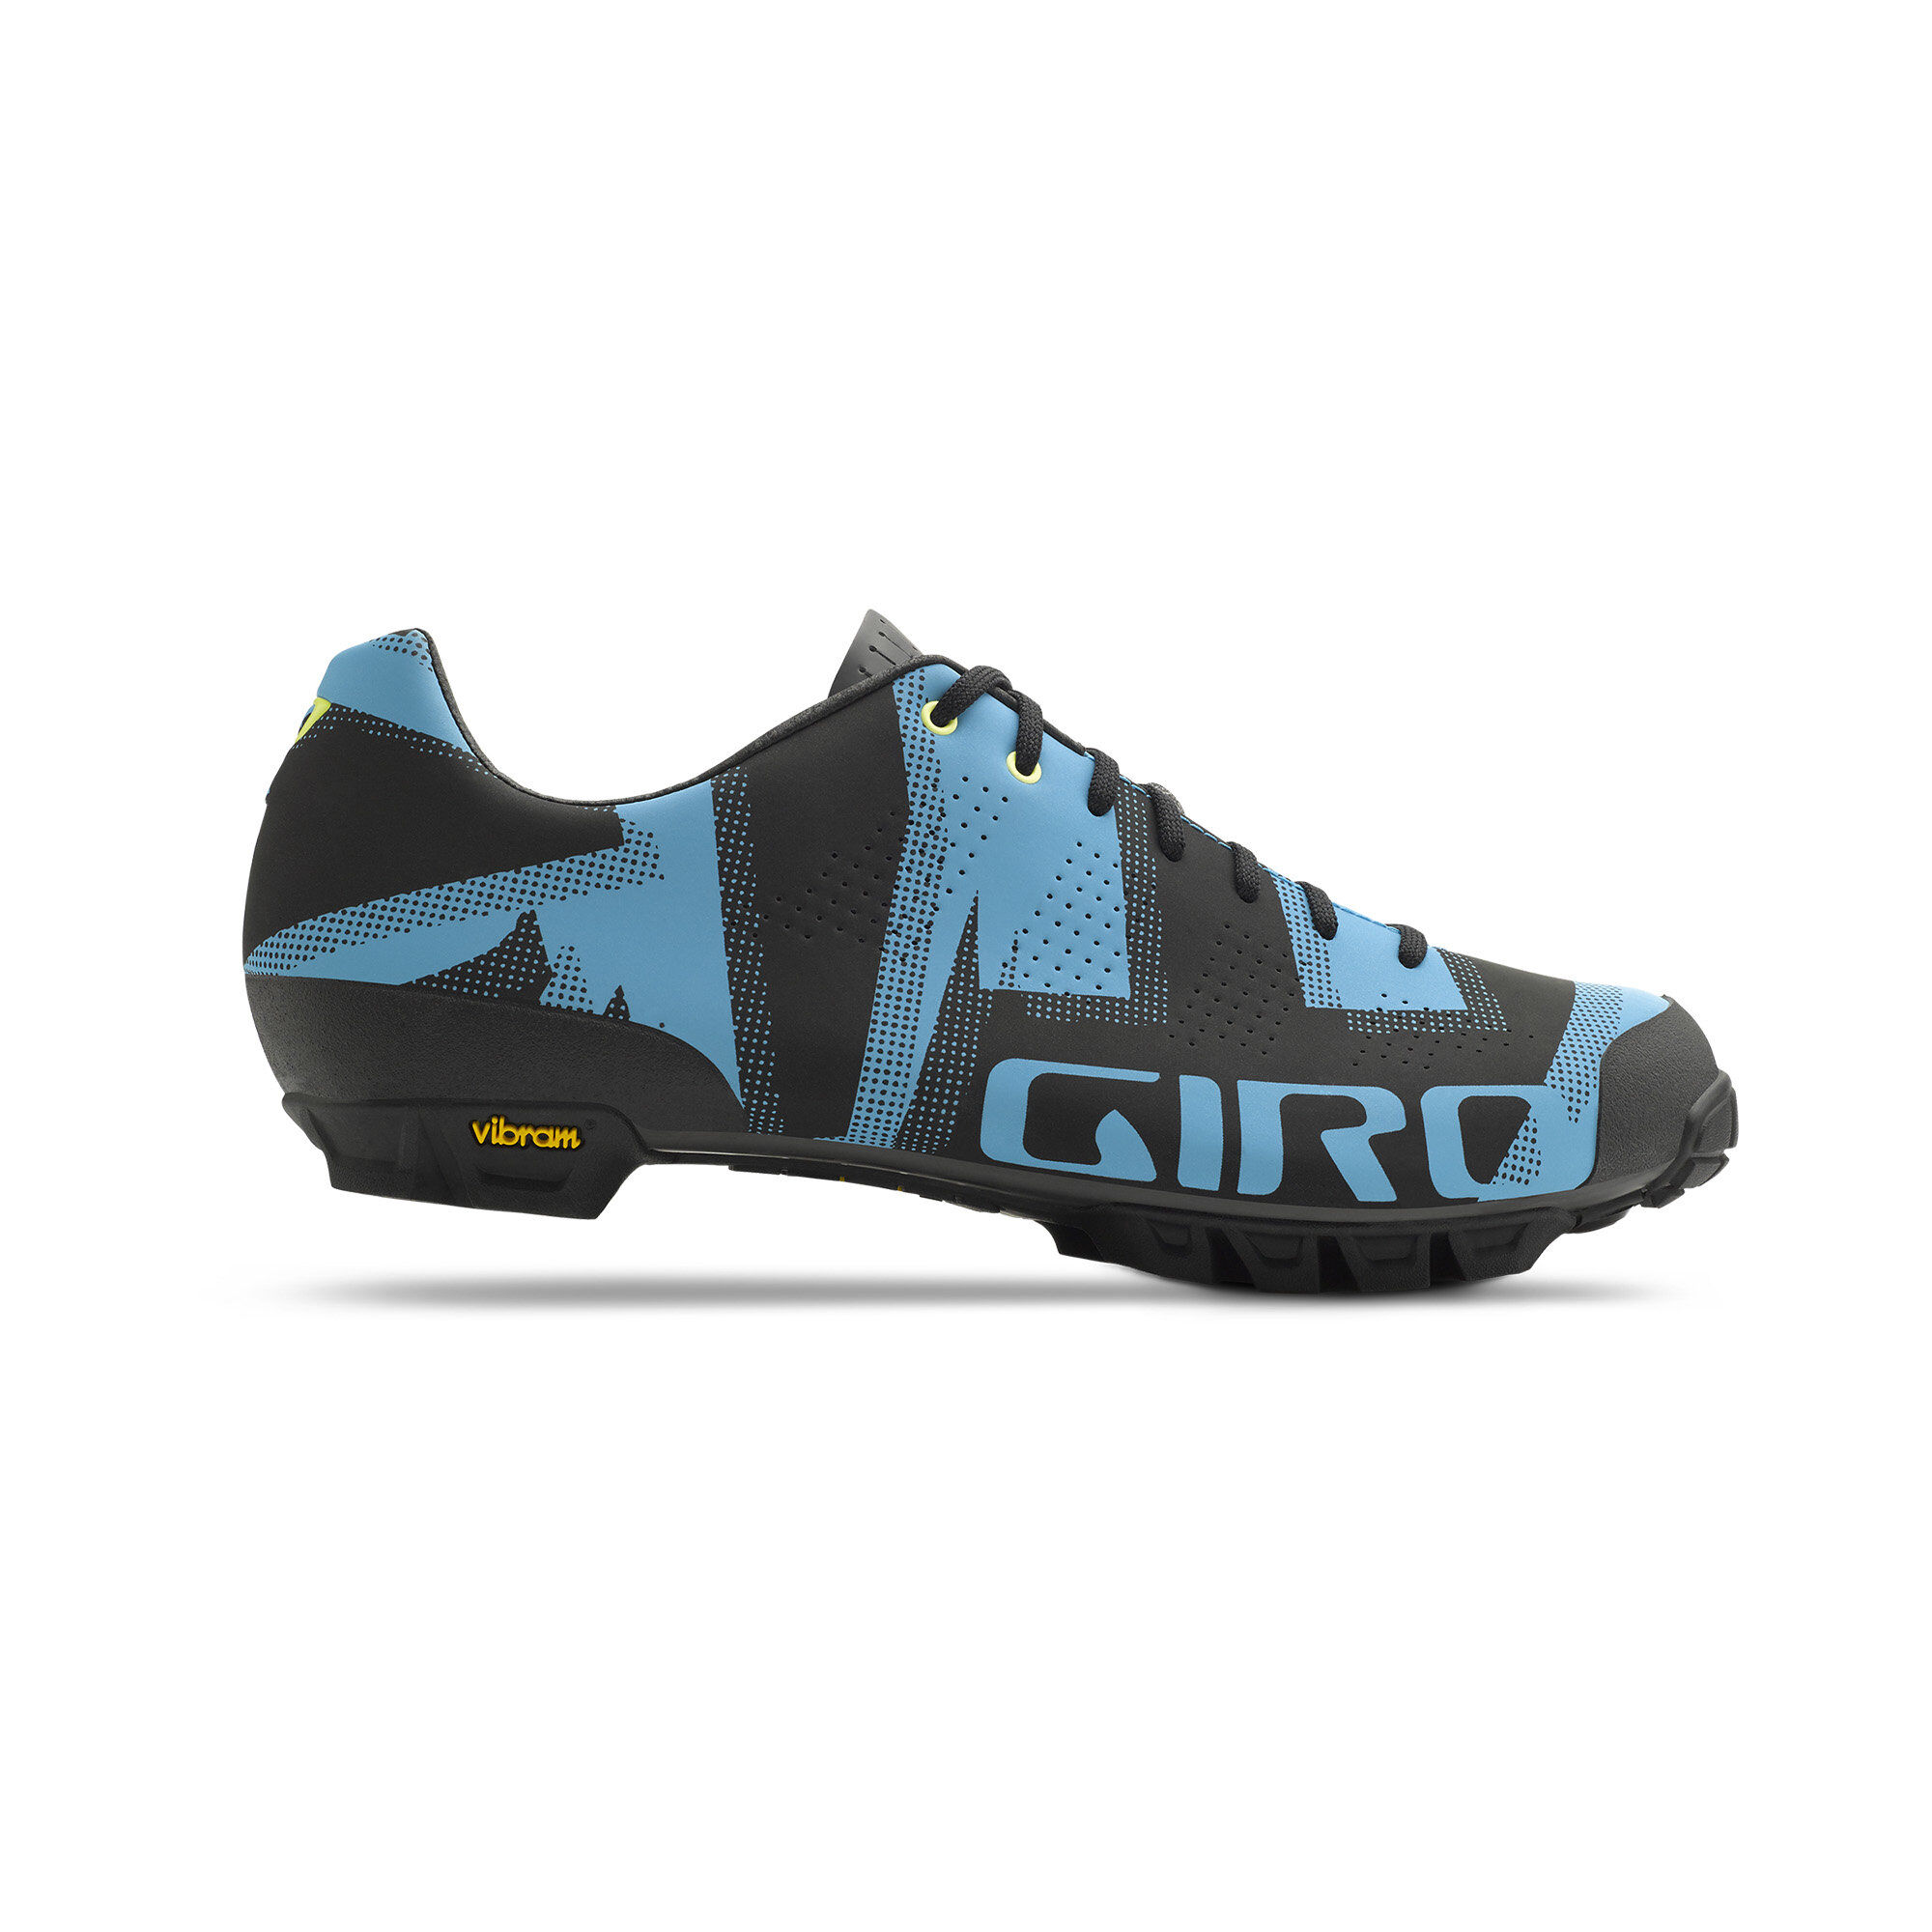 Giro Empire VR90 - Zapatillas de ciclismo - Hombre